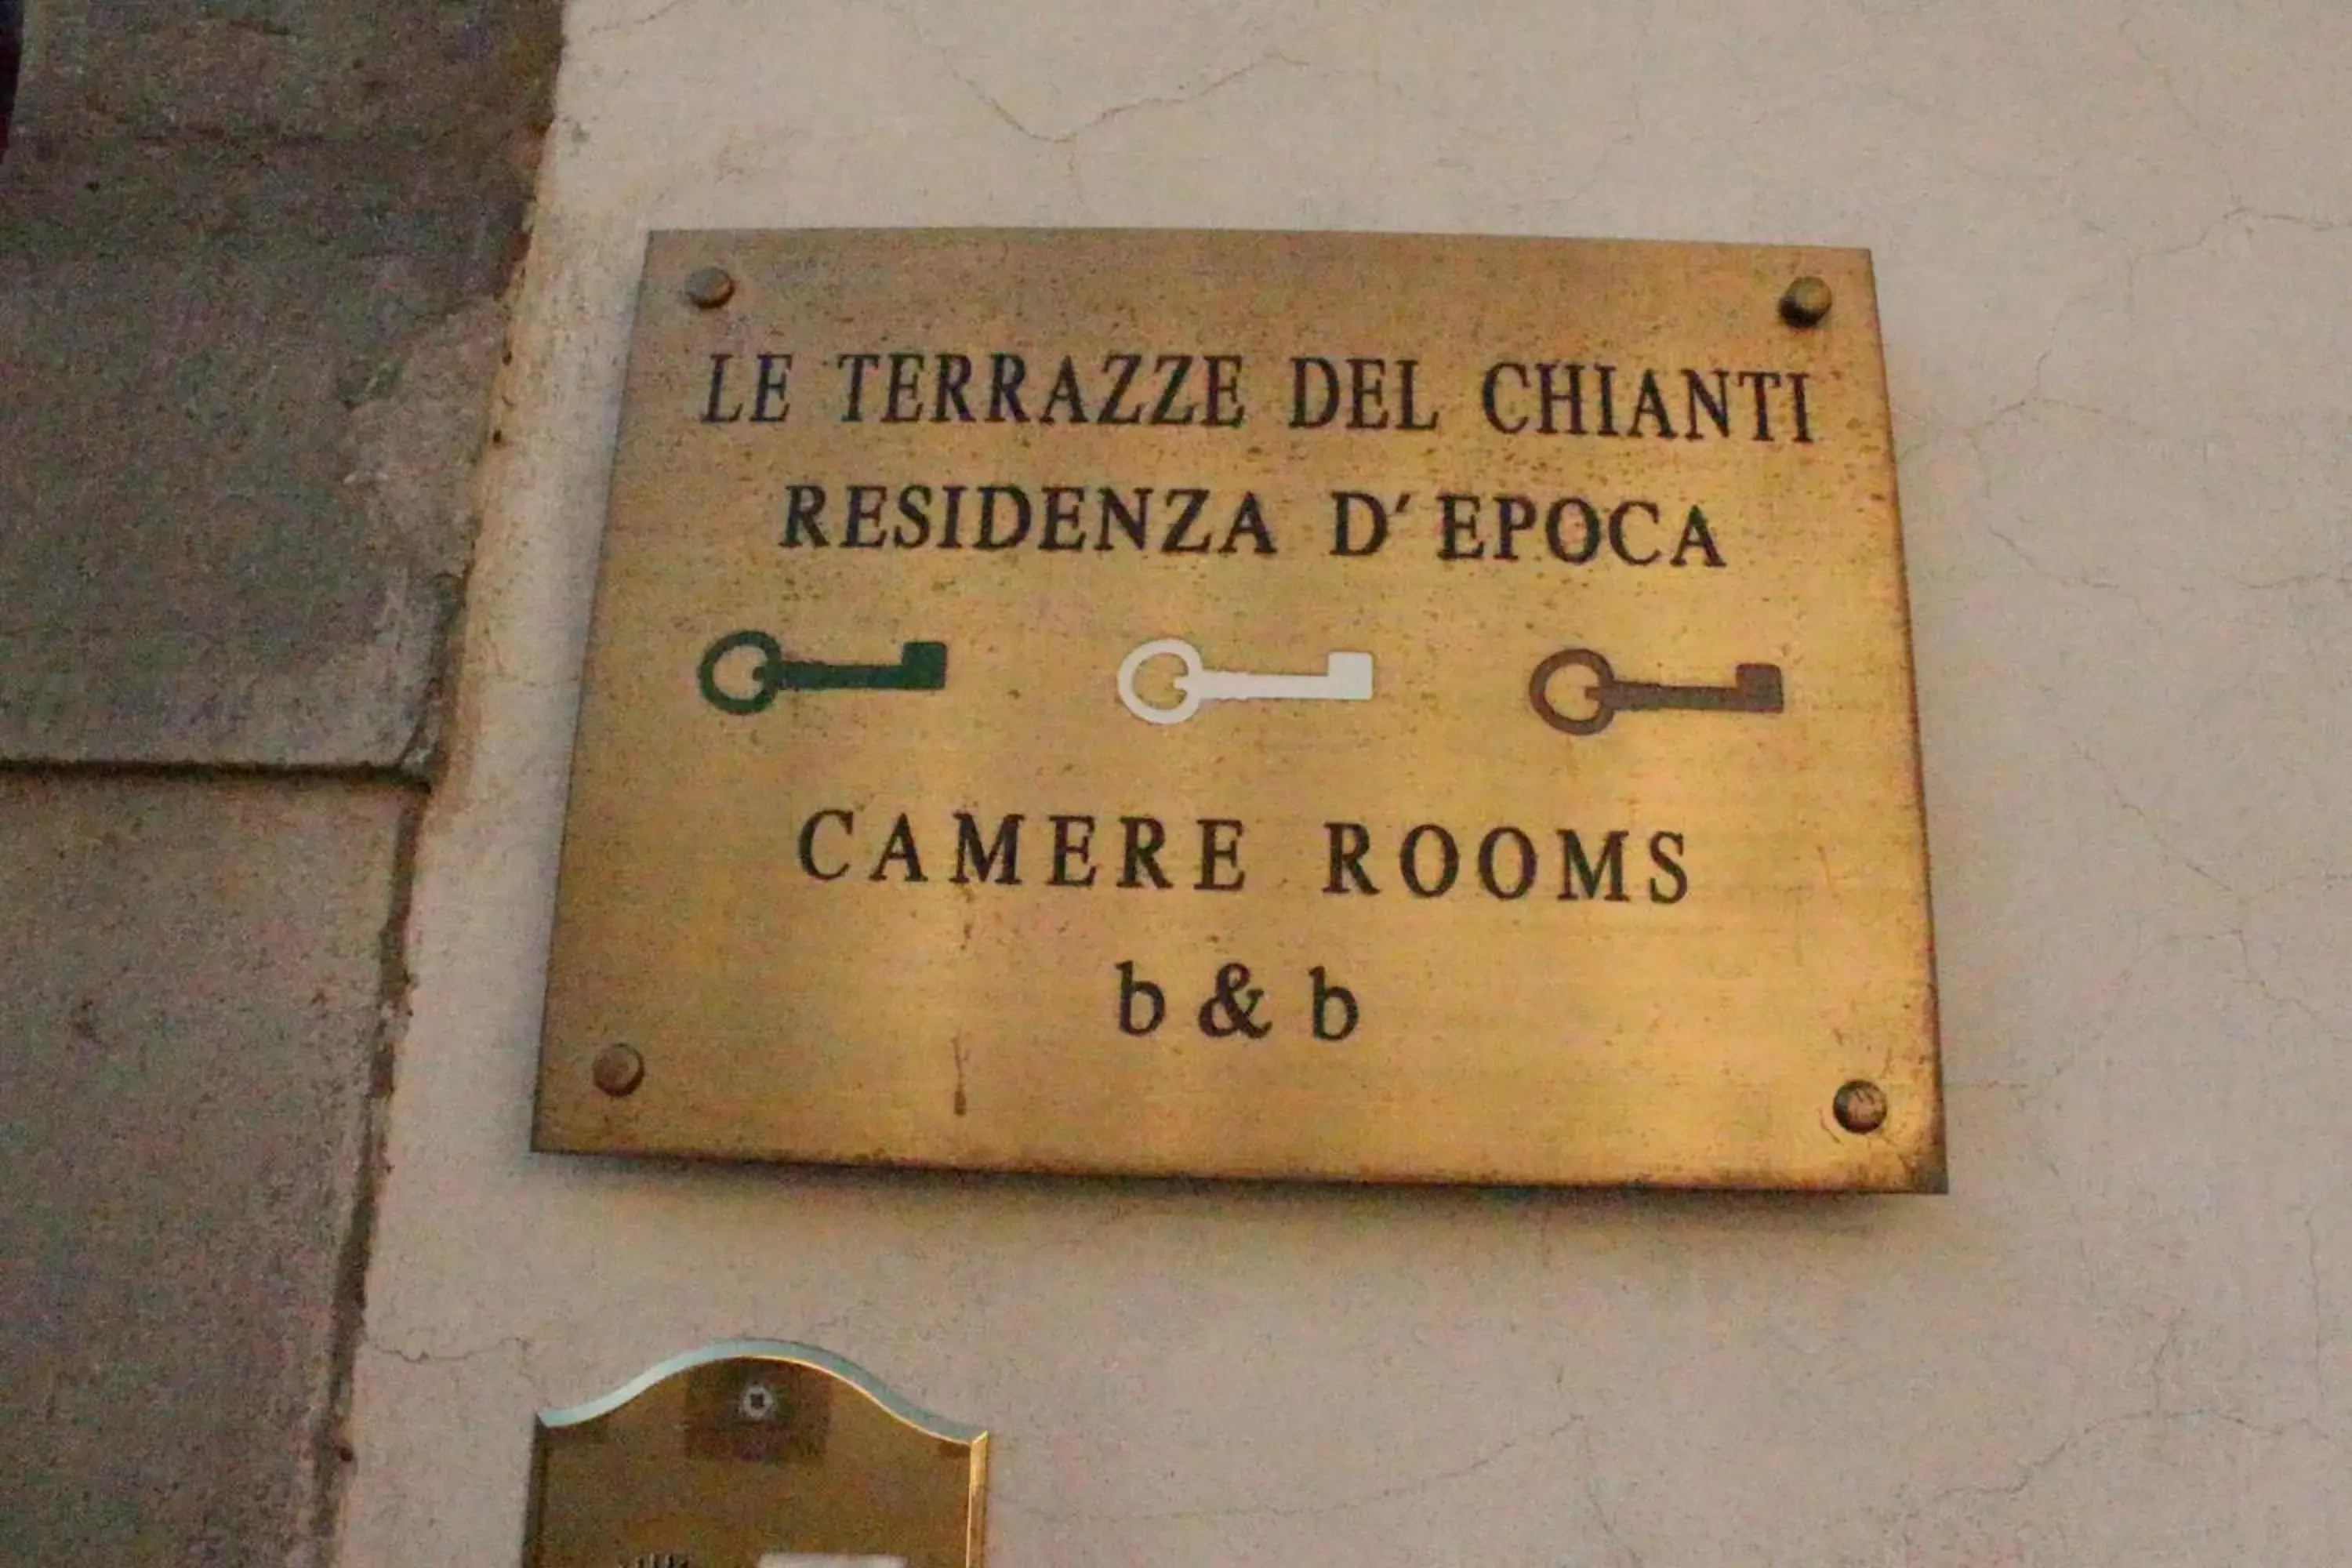 Property logo or sign in Le Terrazze Del Chianti